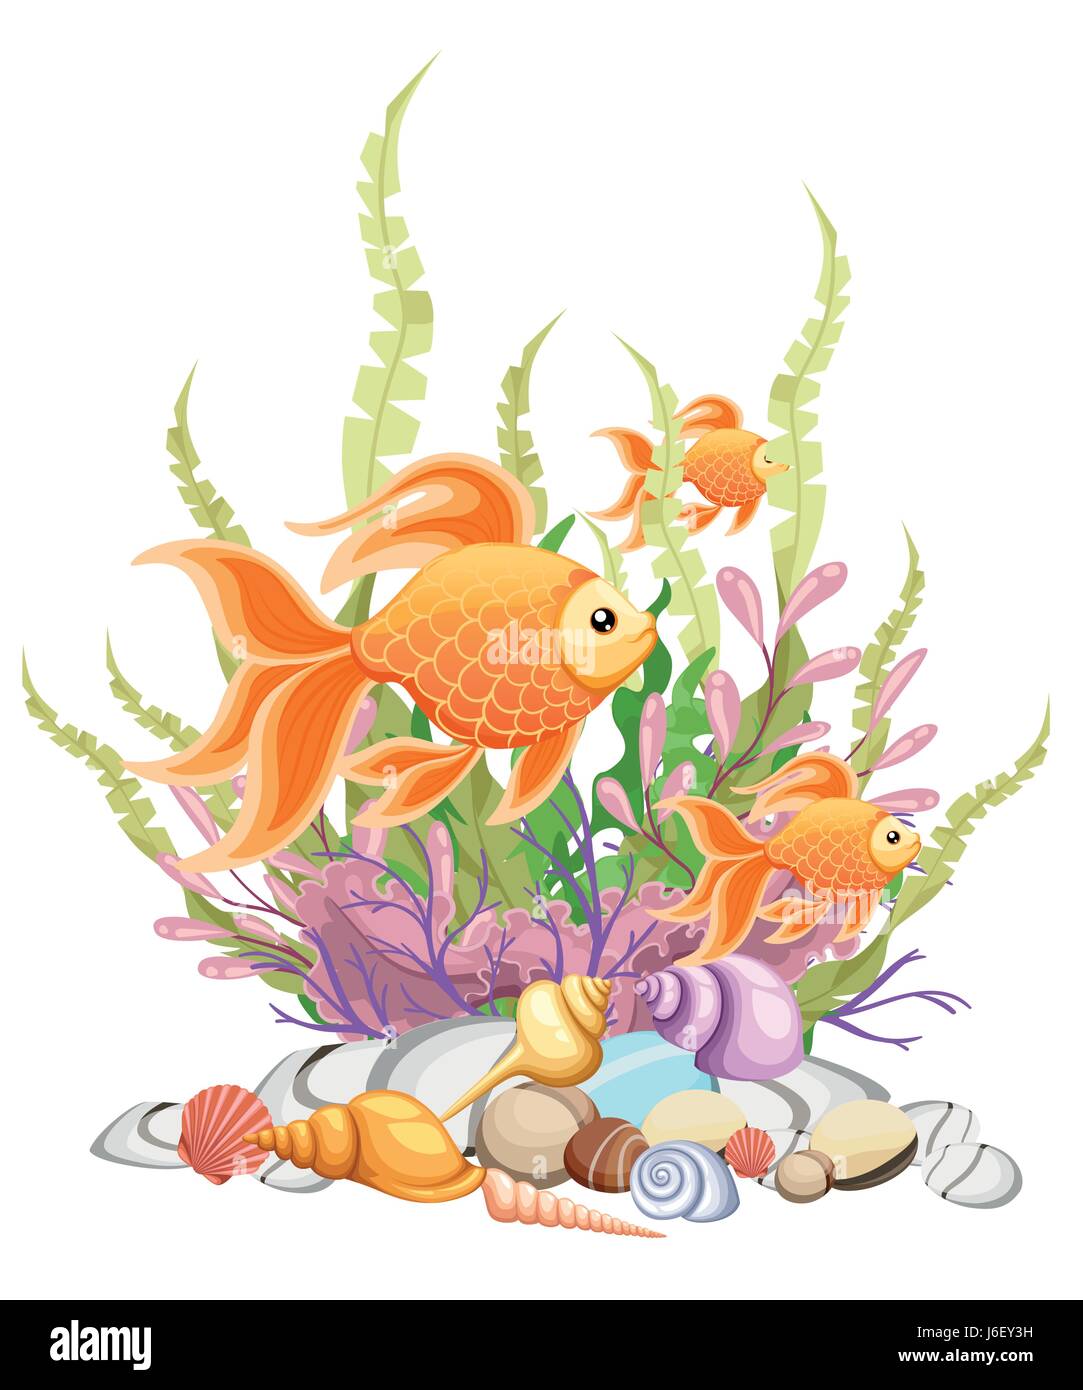 Vector illustration isolated on background Goldfish aquarium fish